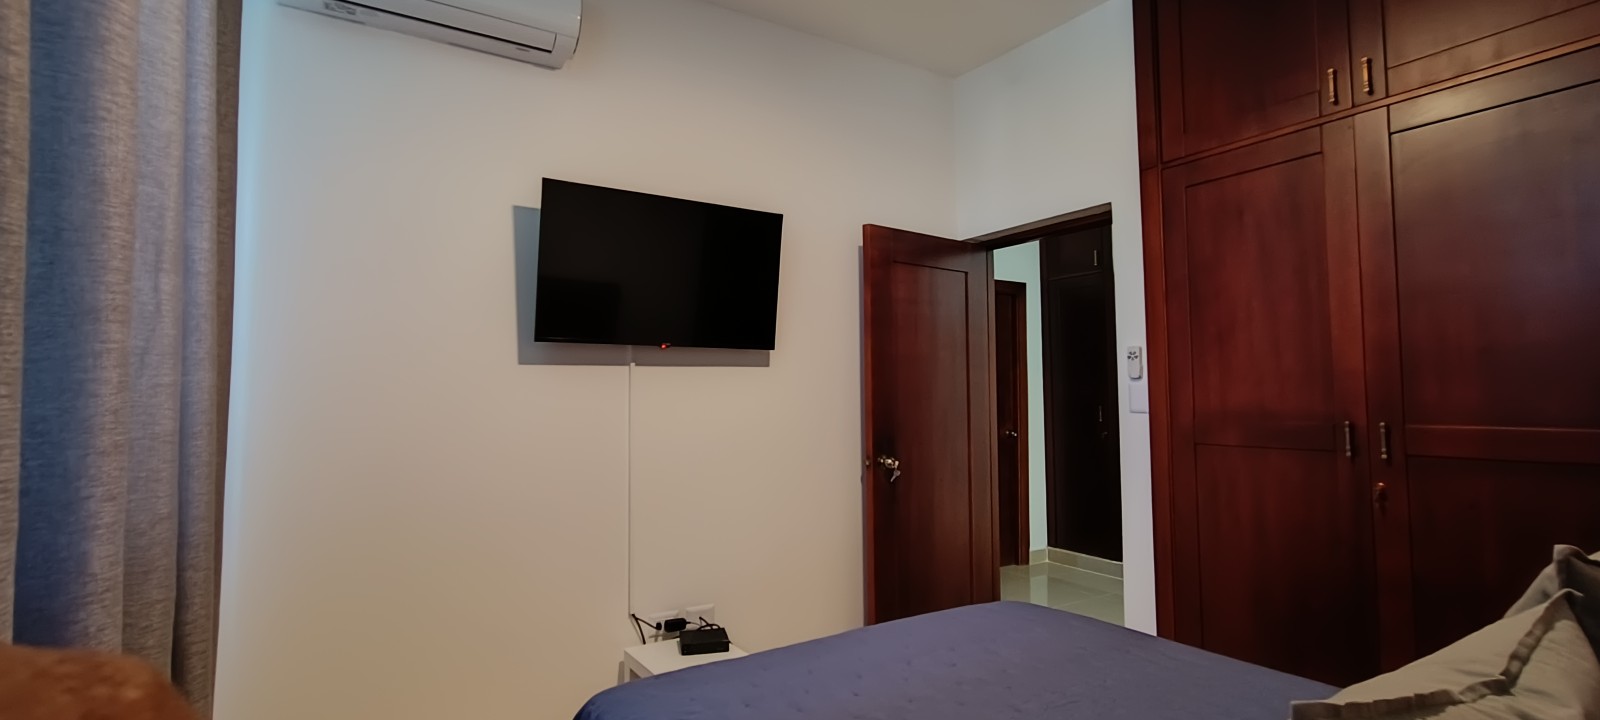 apartamentos - Vendo 4to piso Amueblado para inversión airbnb en el despertar 1